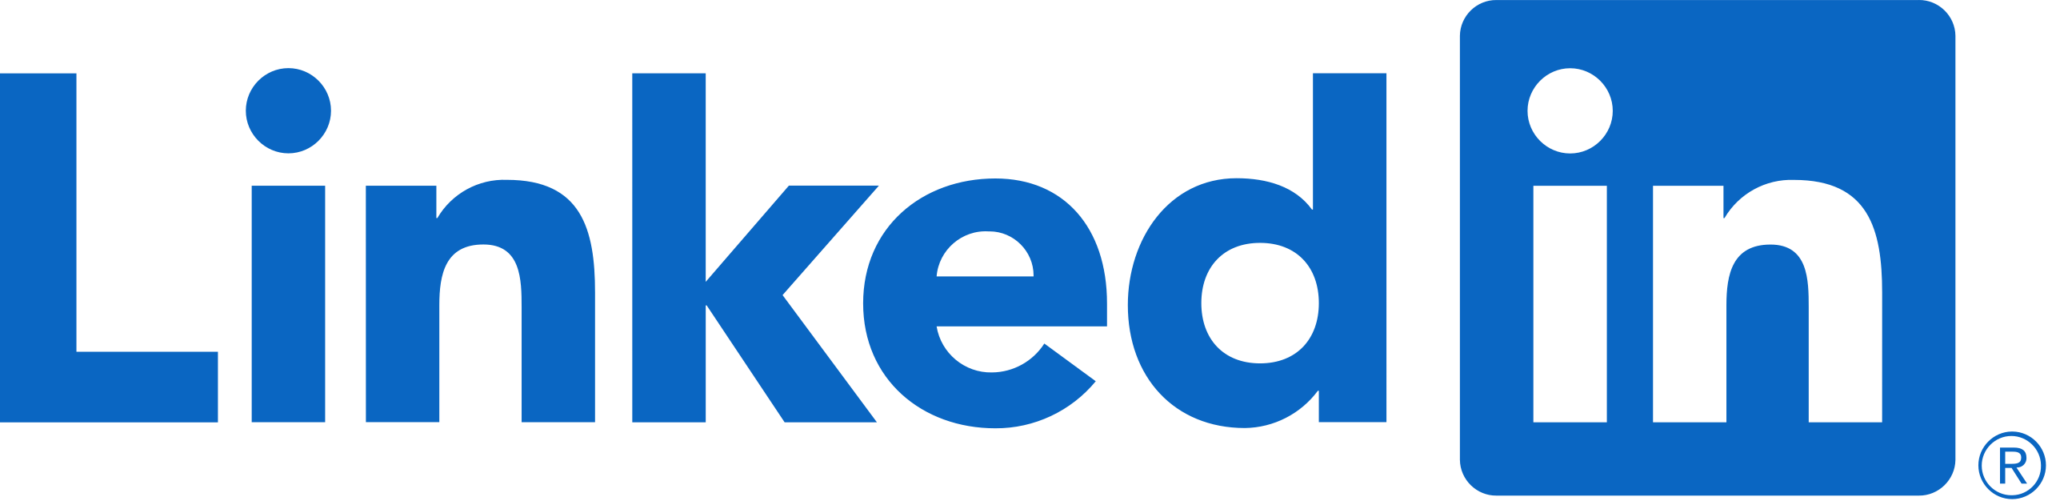 LinkedIn_Logo.svg.png